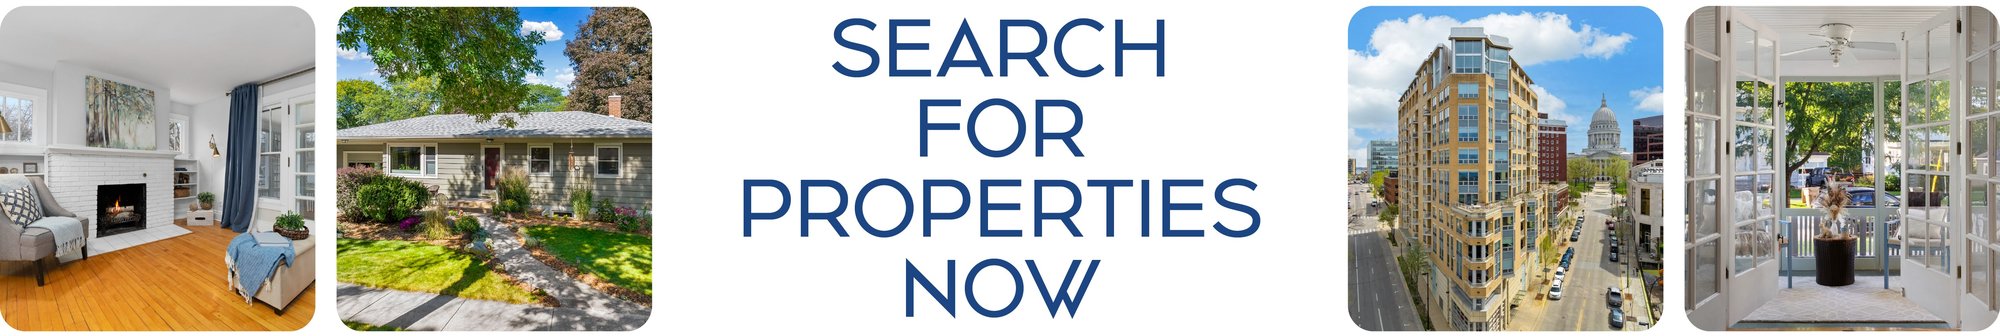 Dane County Property Search